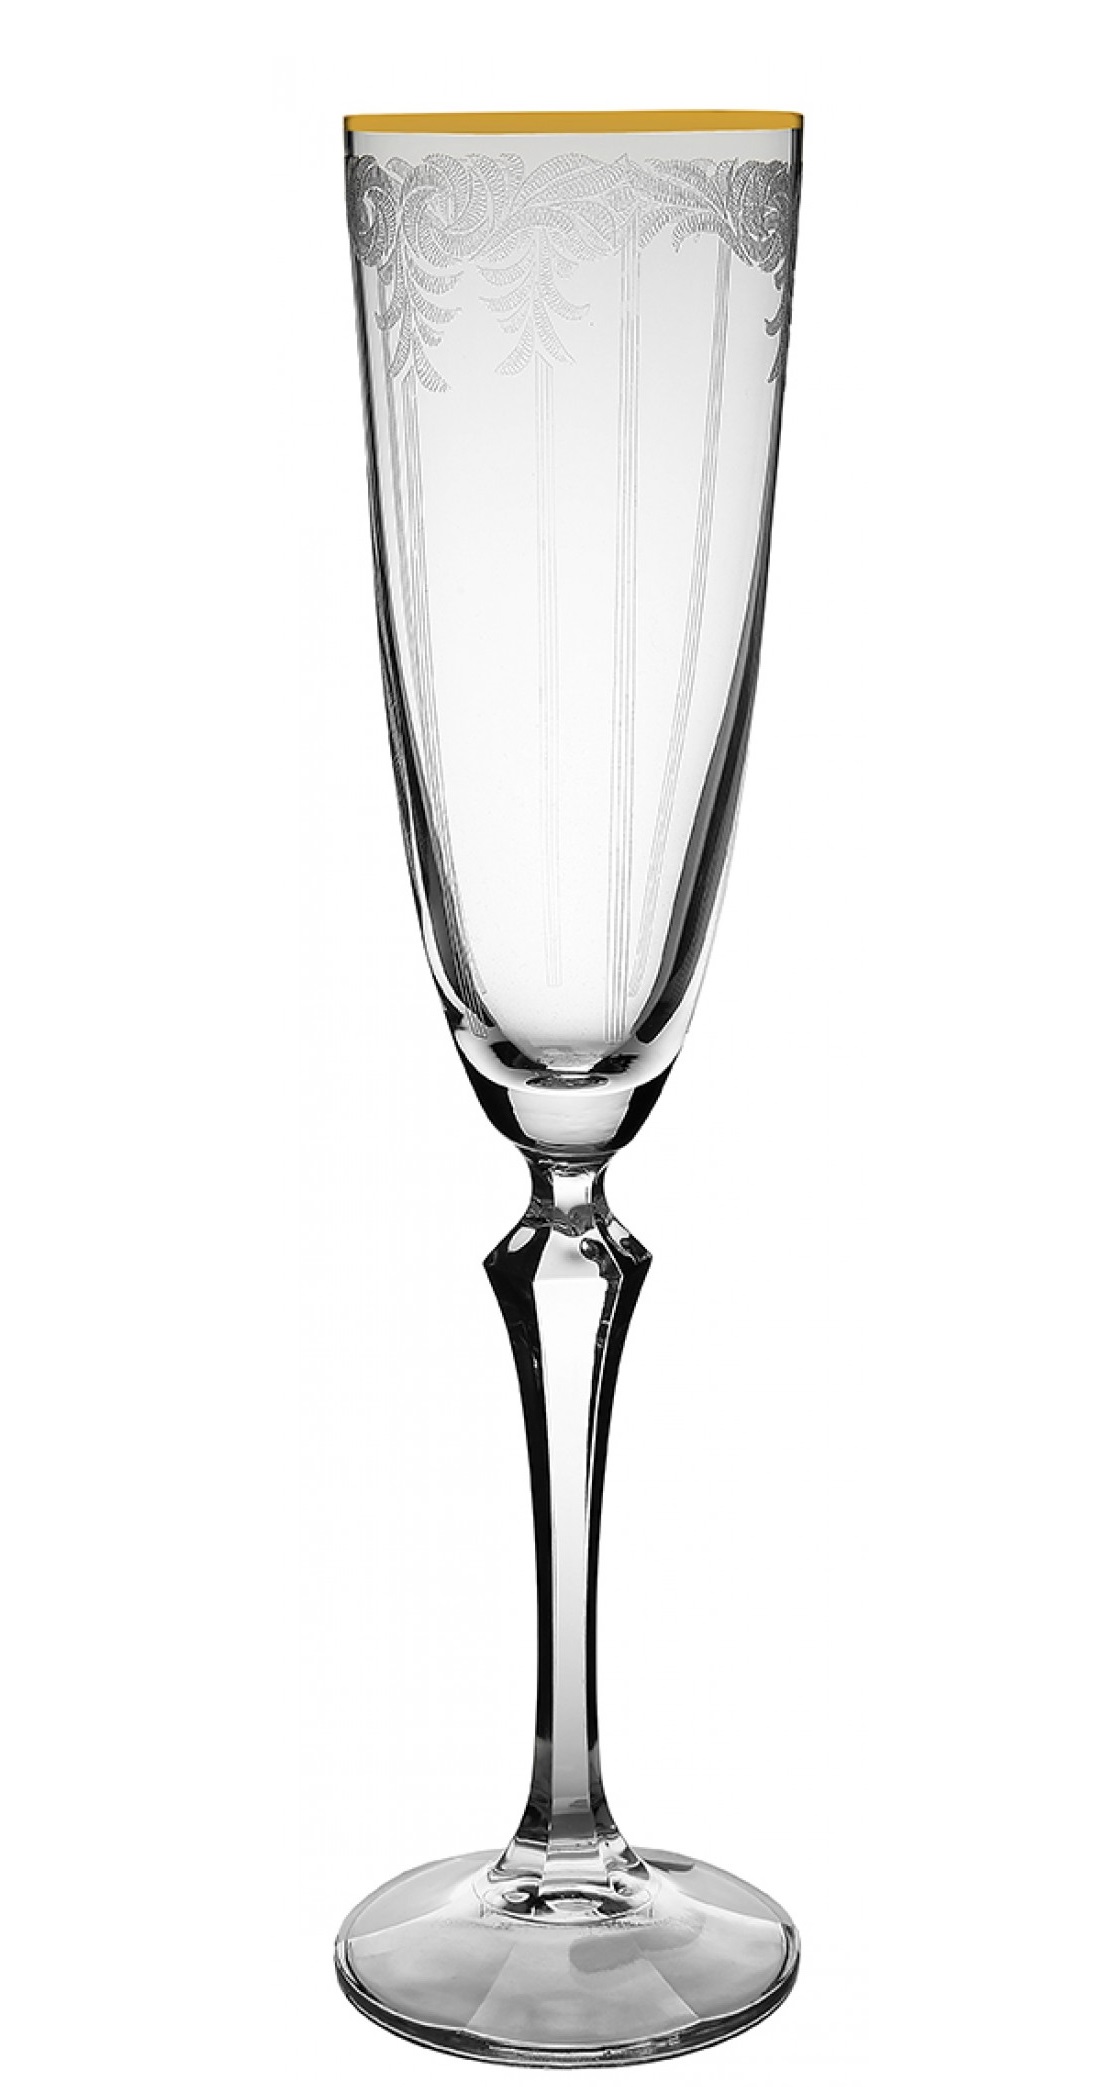 Ποτήρι Κολωνάτο Σαμπάνιας Flute 200ml Elisabeth - Q8890/G CLX08890024 Bohemia